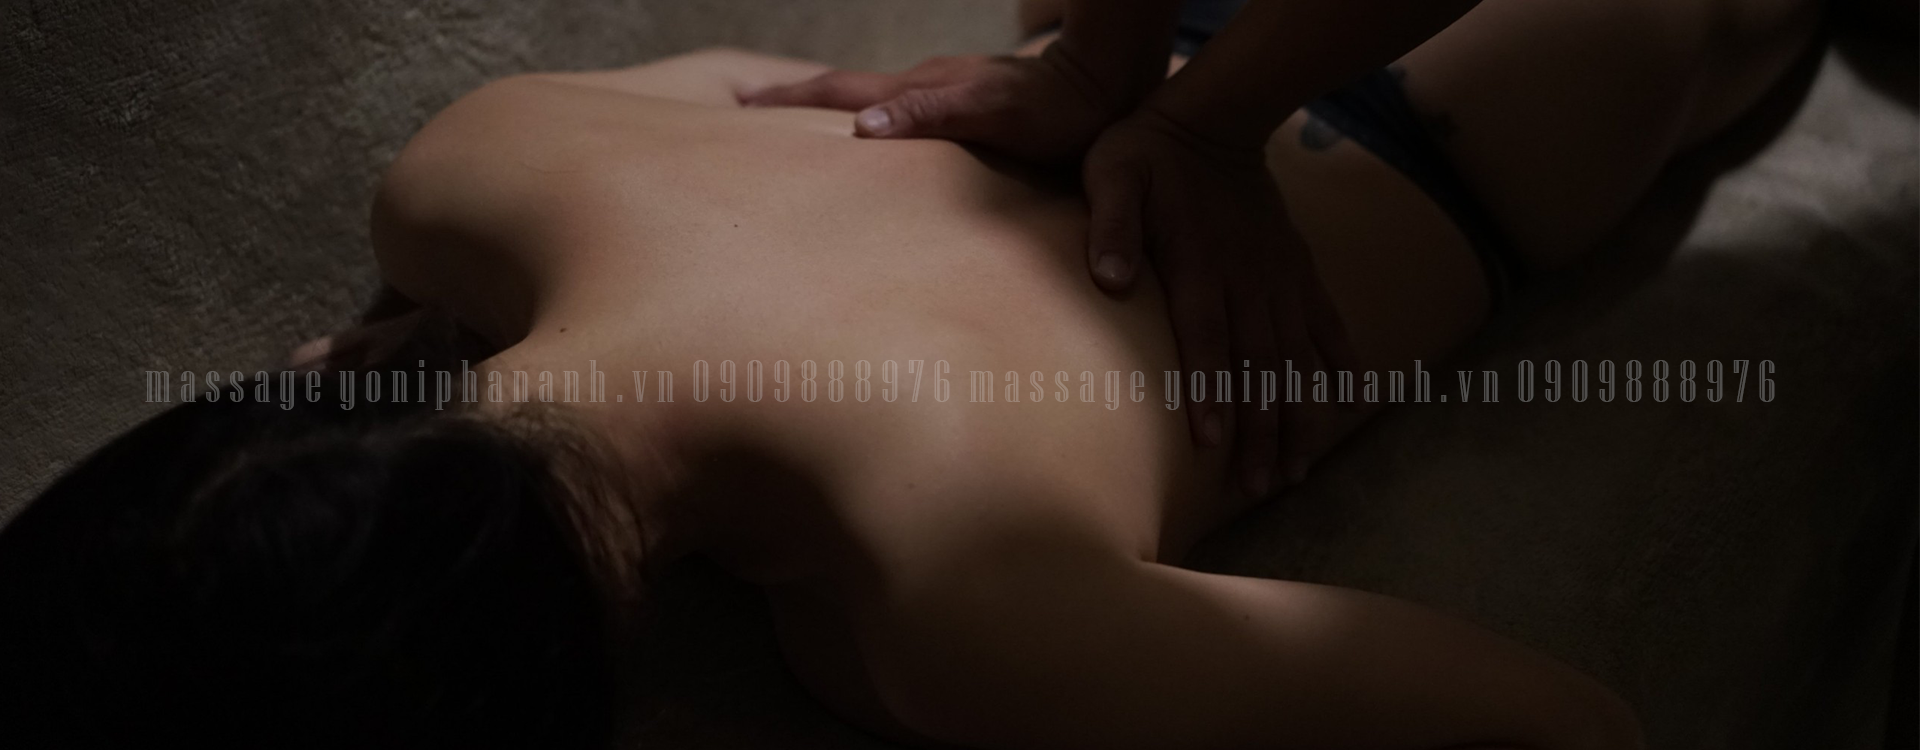 massage body tại nhà cho nữ,